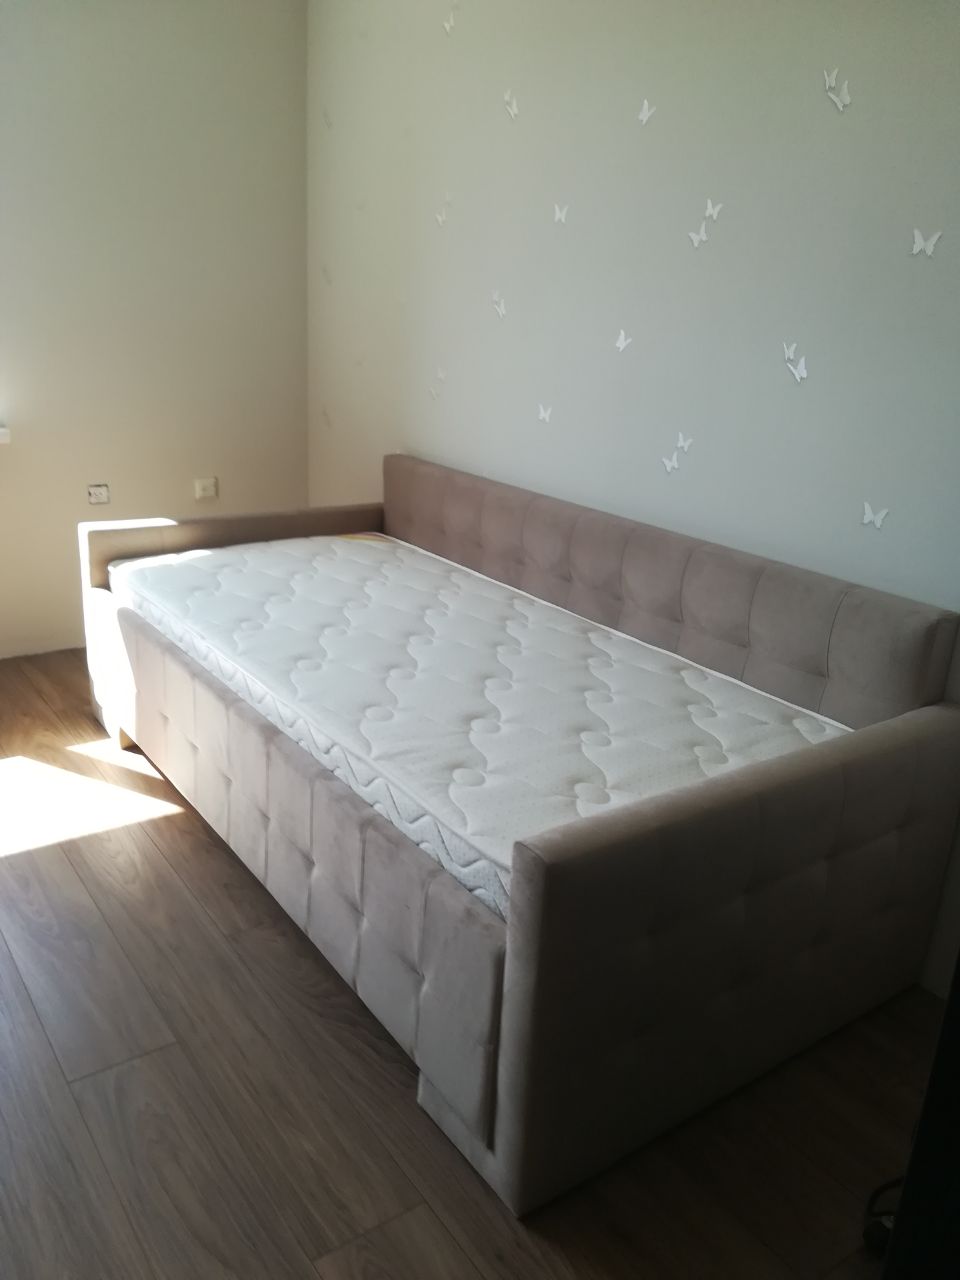 Полутораспальная кровать "Bella-Кристалл" 120 х 200 с подъемным механизмом цвет best 50